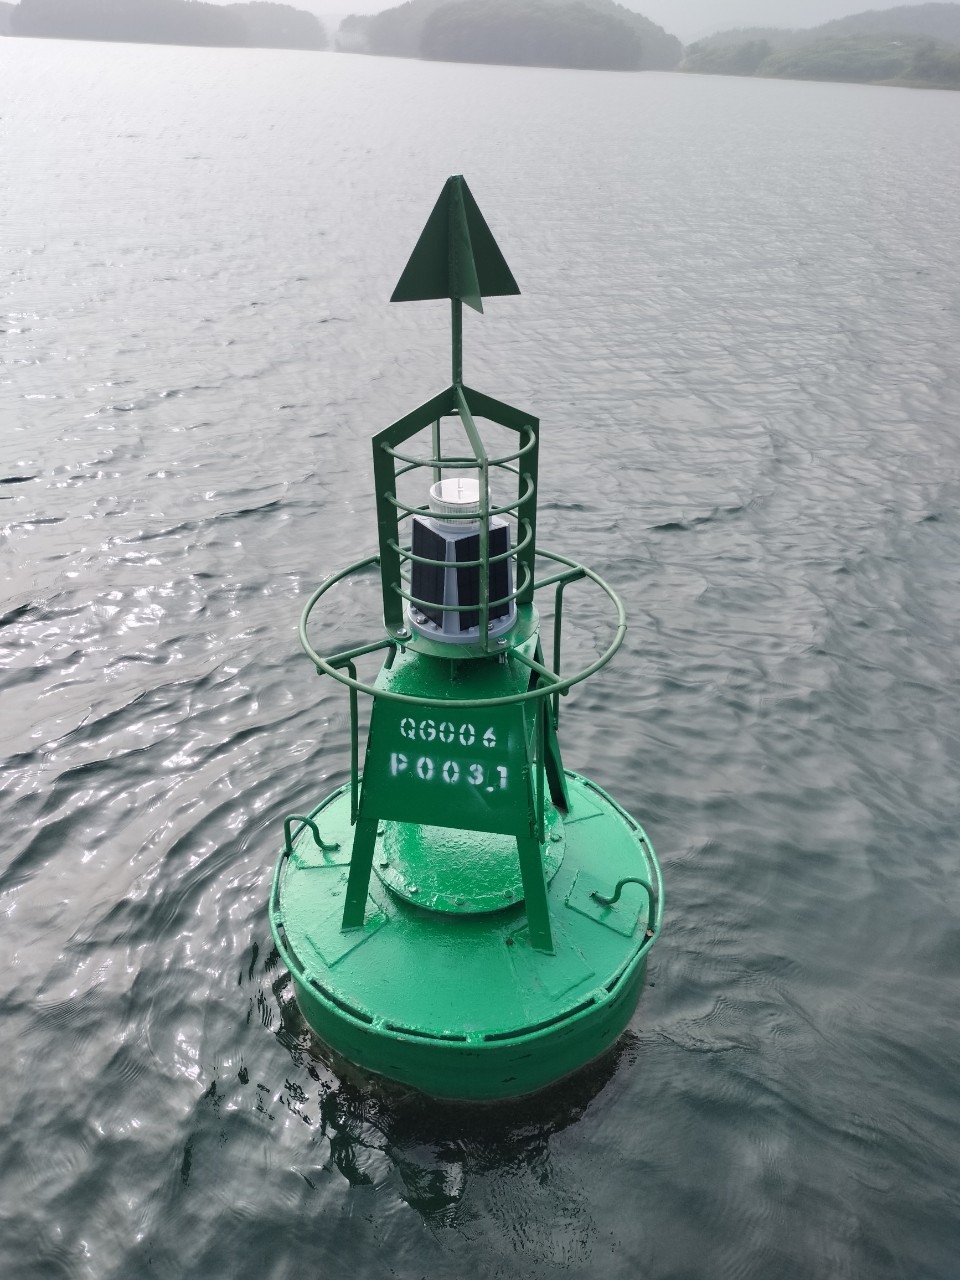 Video cận cảnh hệ thống đèn đường thủy định vị vệ tinh vừa lắp đặt trên hồ Thác Bà- Ảnh 1.